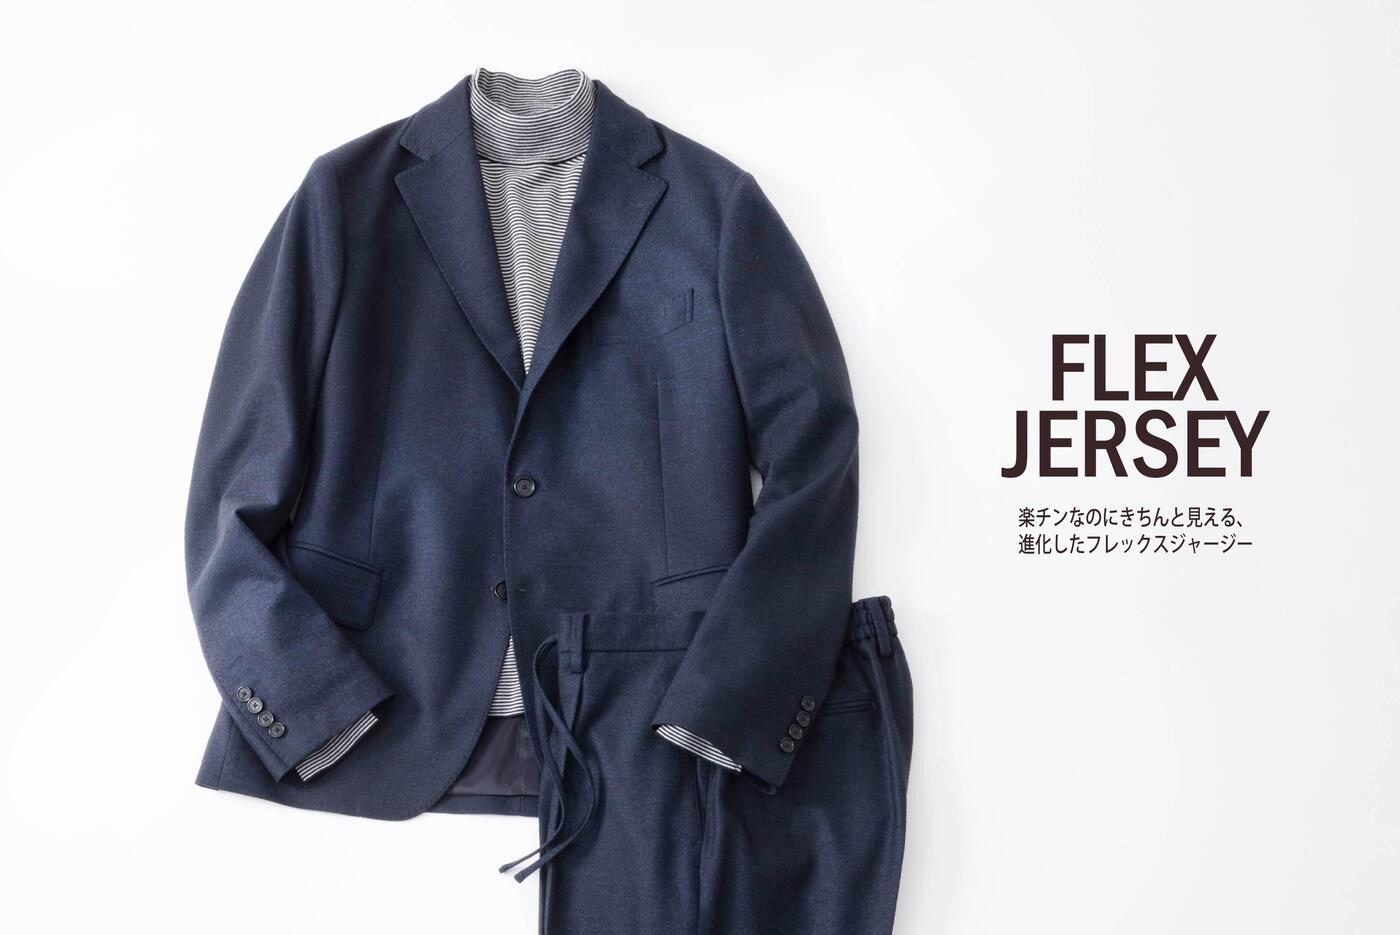 FLEX JERSEY SERIES〜楽チンなのにきちんと見える、進化したフレックスジャージー